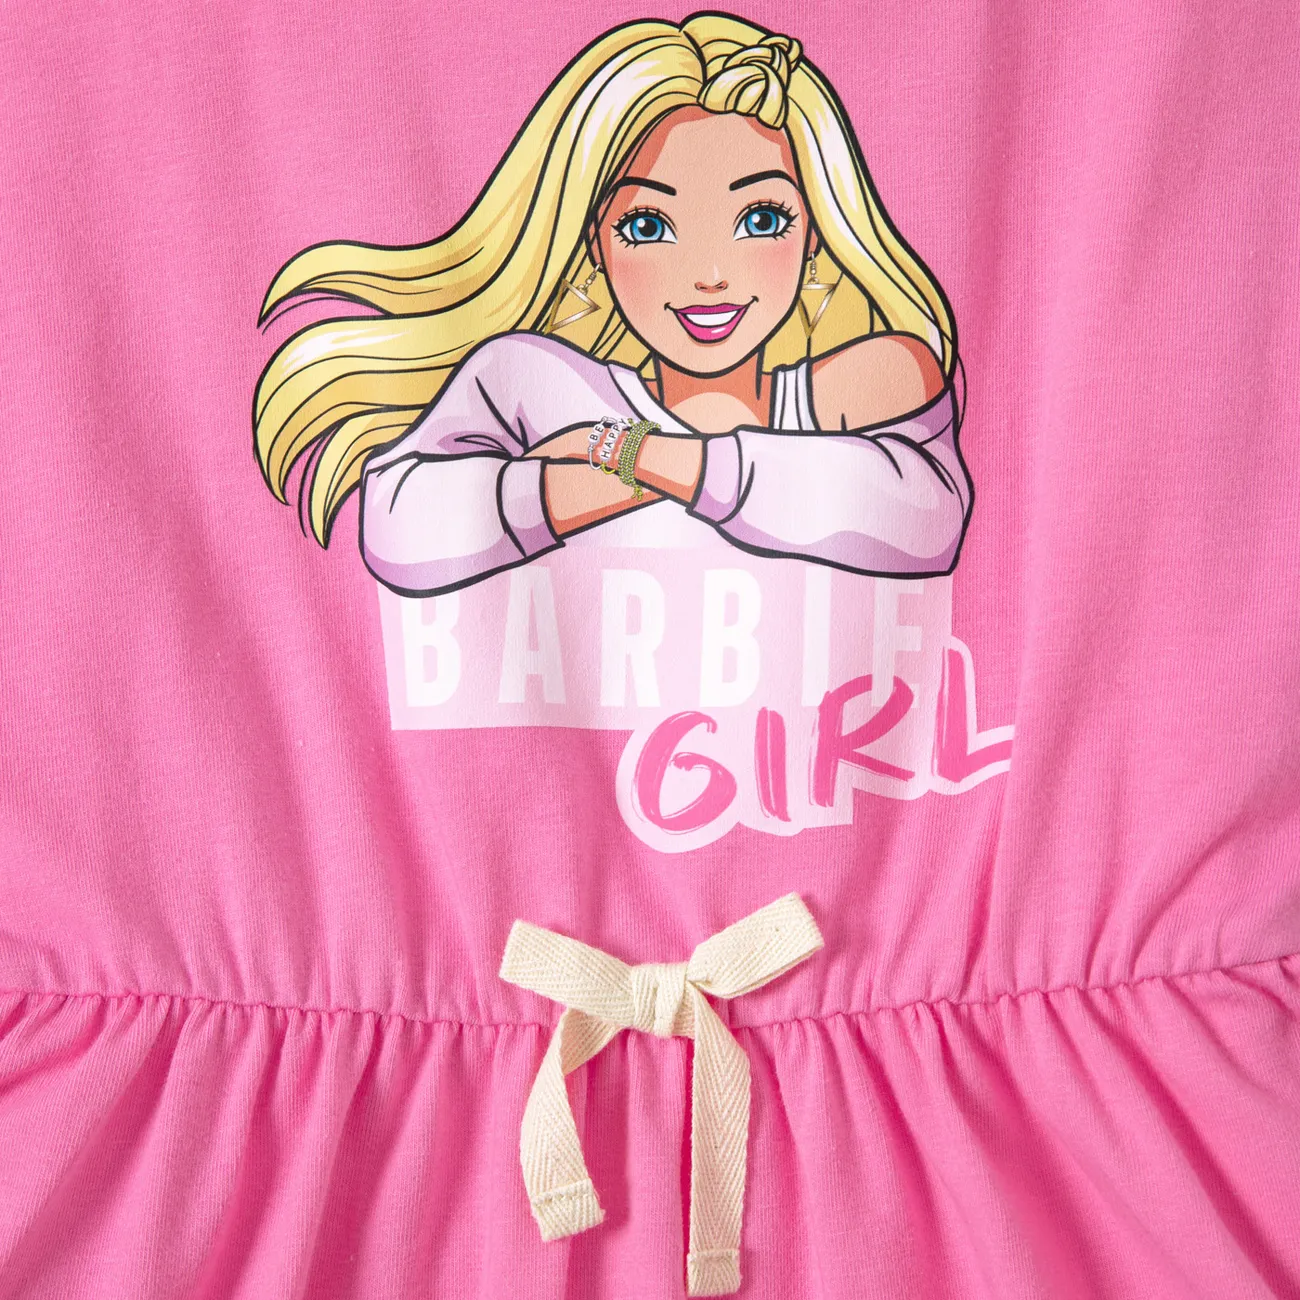 Barbie IP Fille Enfantin Robes rose big image 1